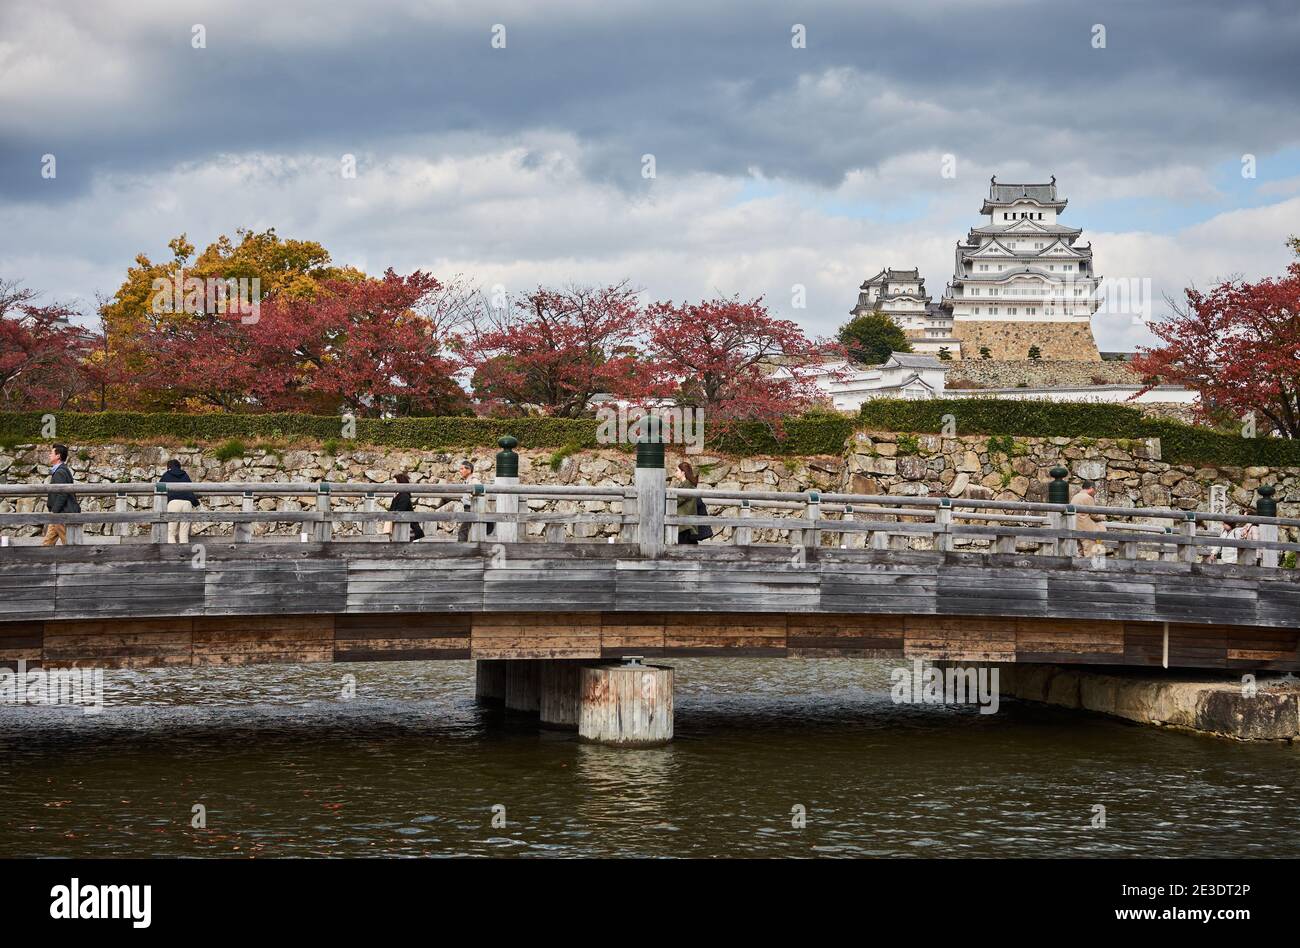 Himeji, Japon - 11 novembre 2017 : magnifique château Himeji dans la ville de Himeji dans la préfecture de Hyogo dans la région de Kansai au Japon en automne avec carte rouge Banque D'Images